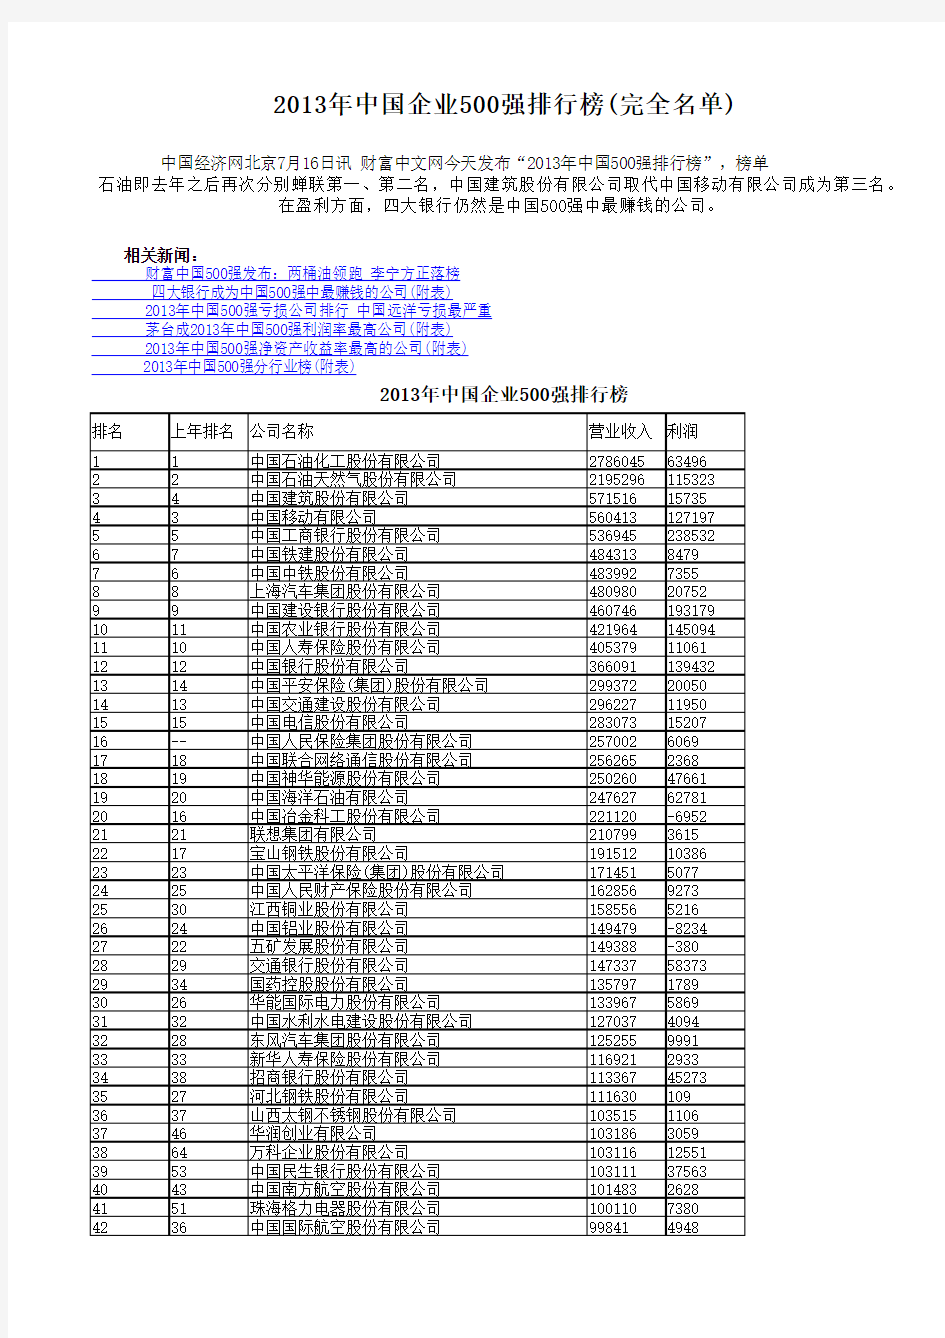 2013年中国企业500强排行榜(完全名单)